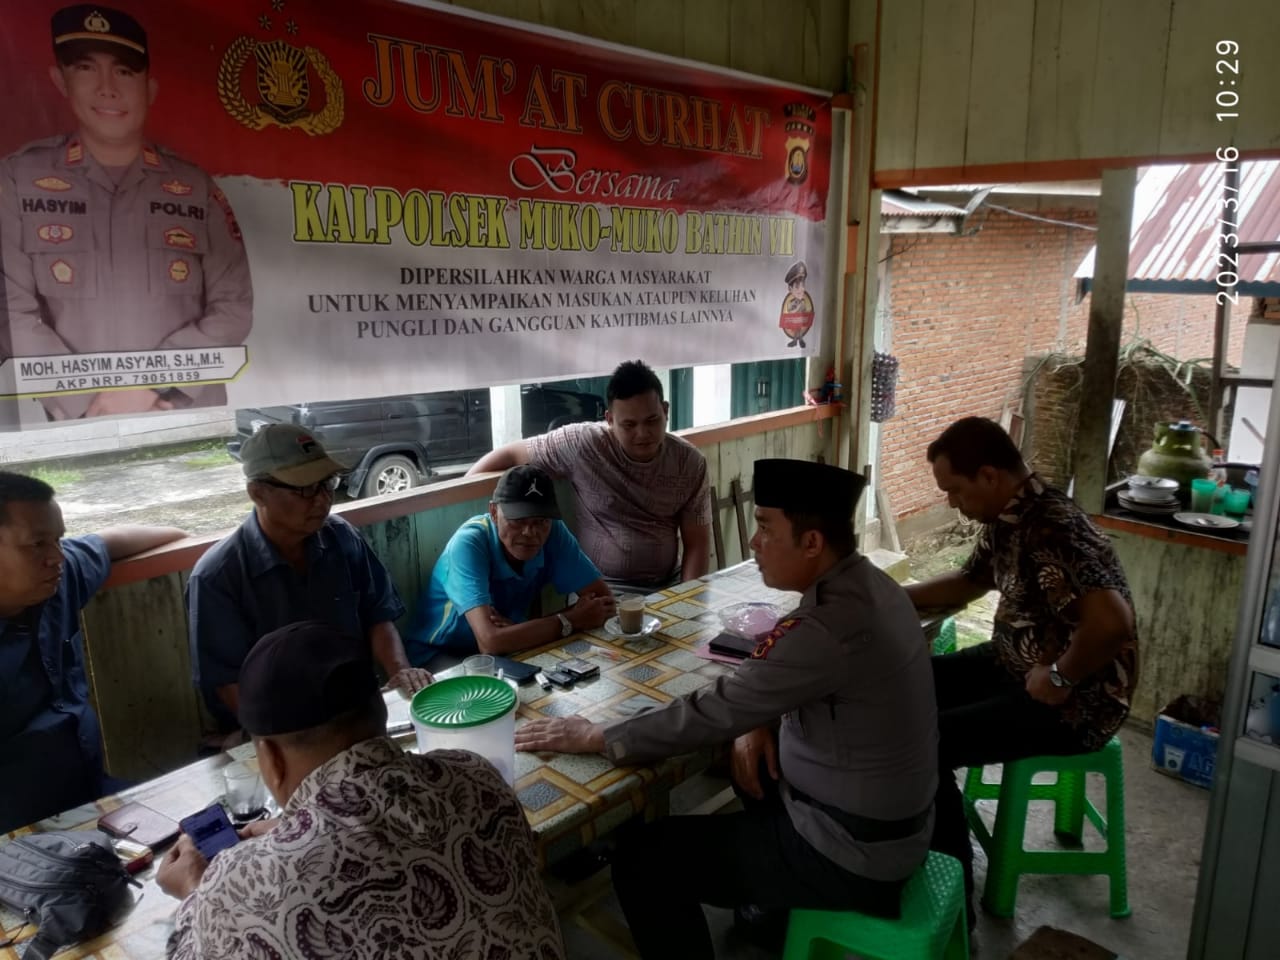 Lewat Jumat Curhat, Kapolsek Muko Muko Dengarkan Keluh Kesah Warga Dusun Tebat